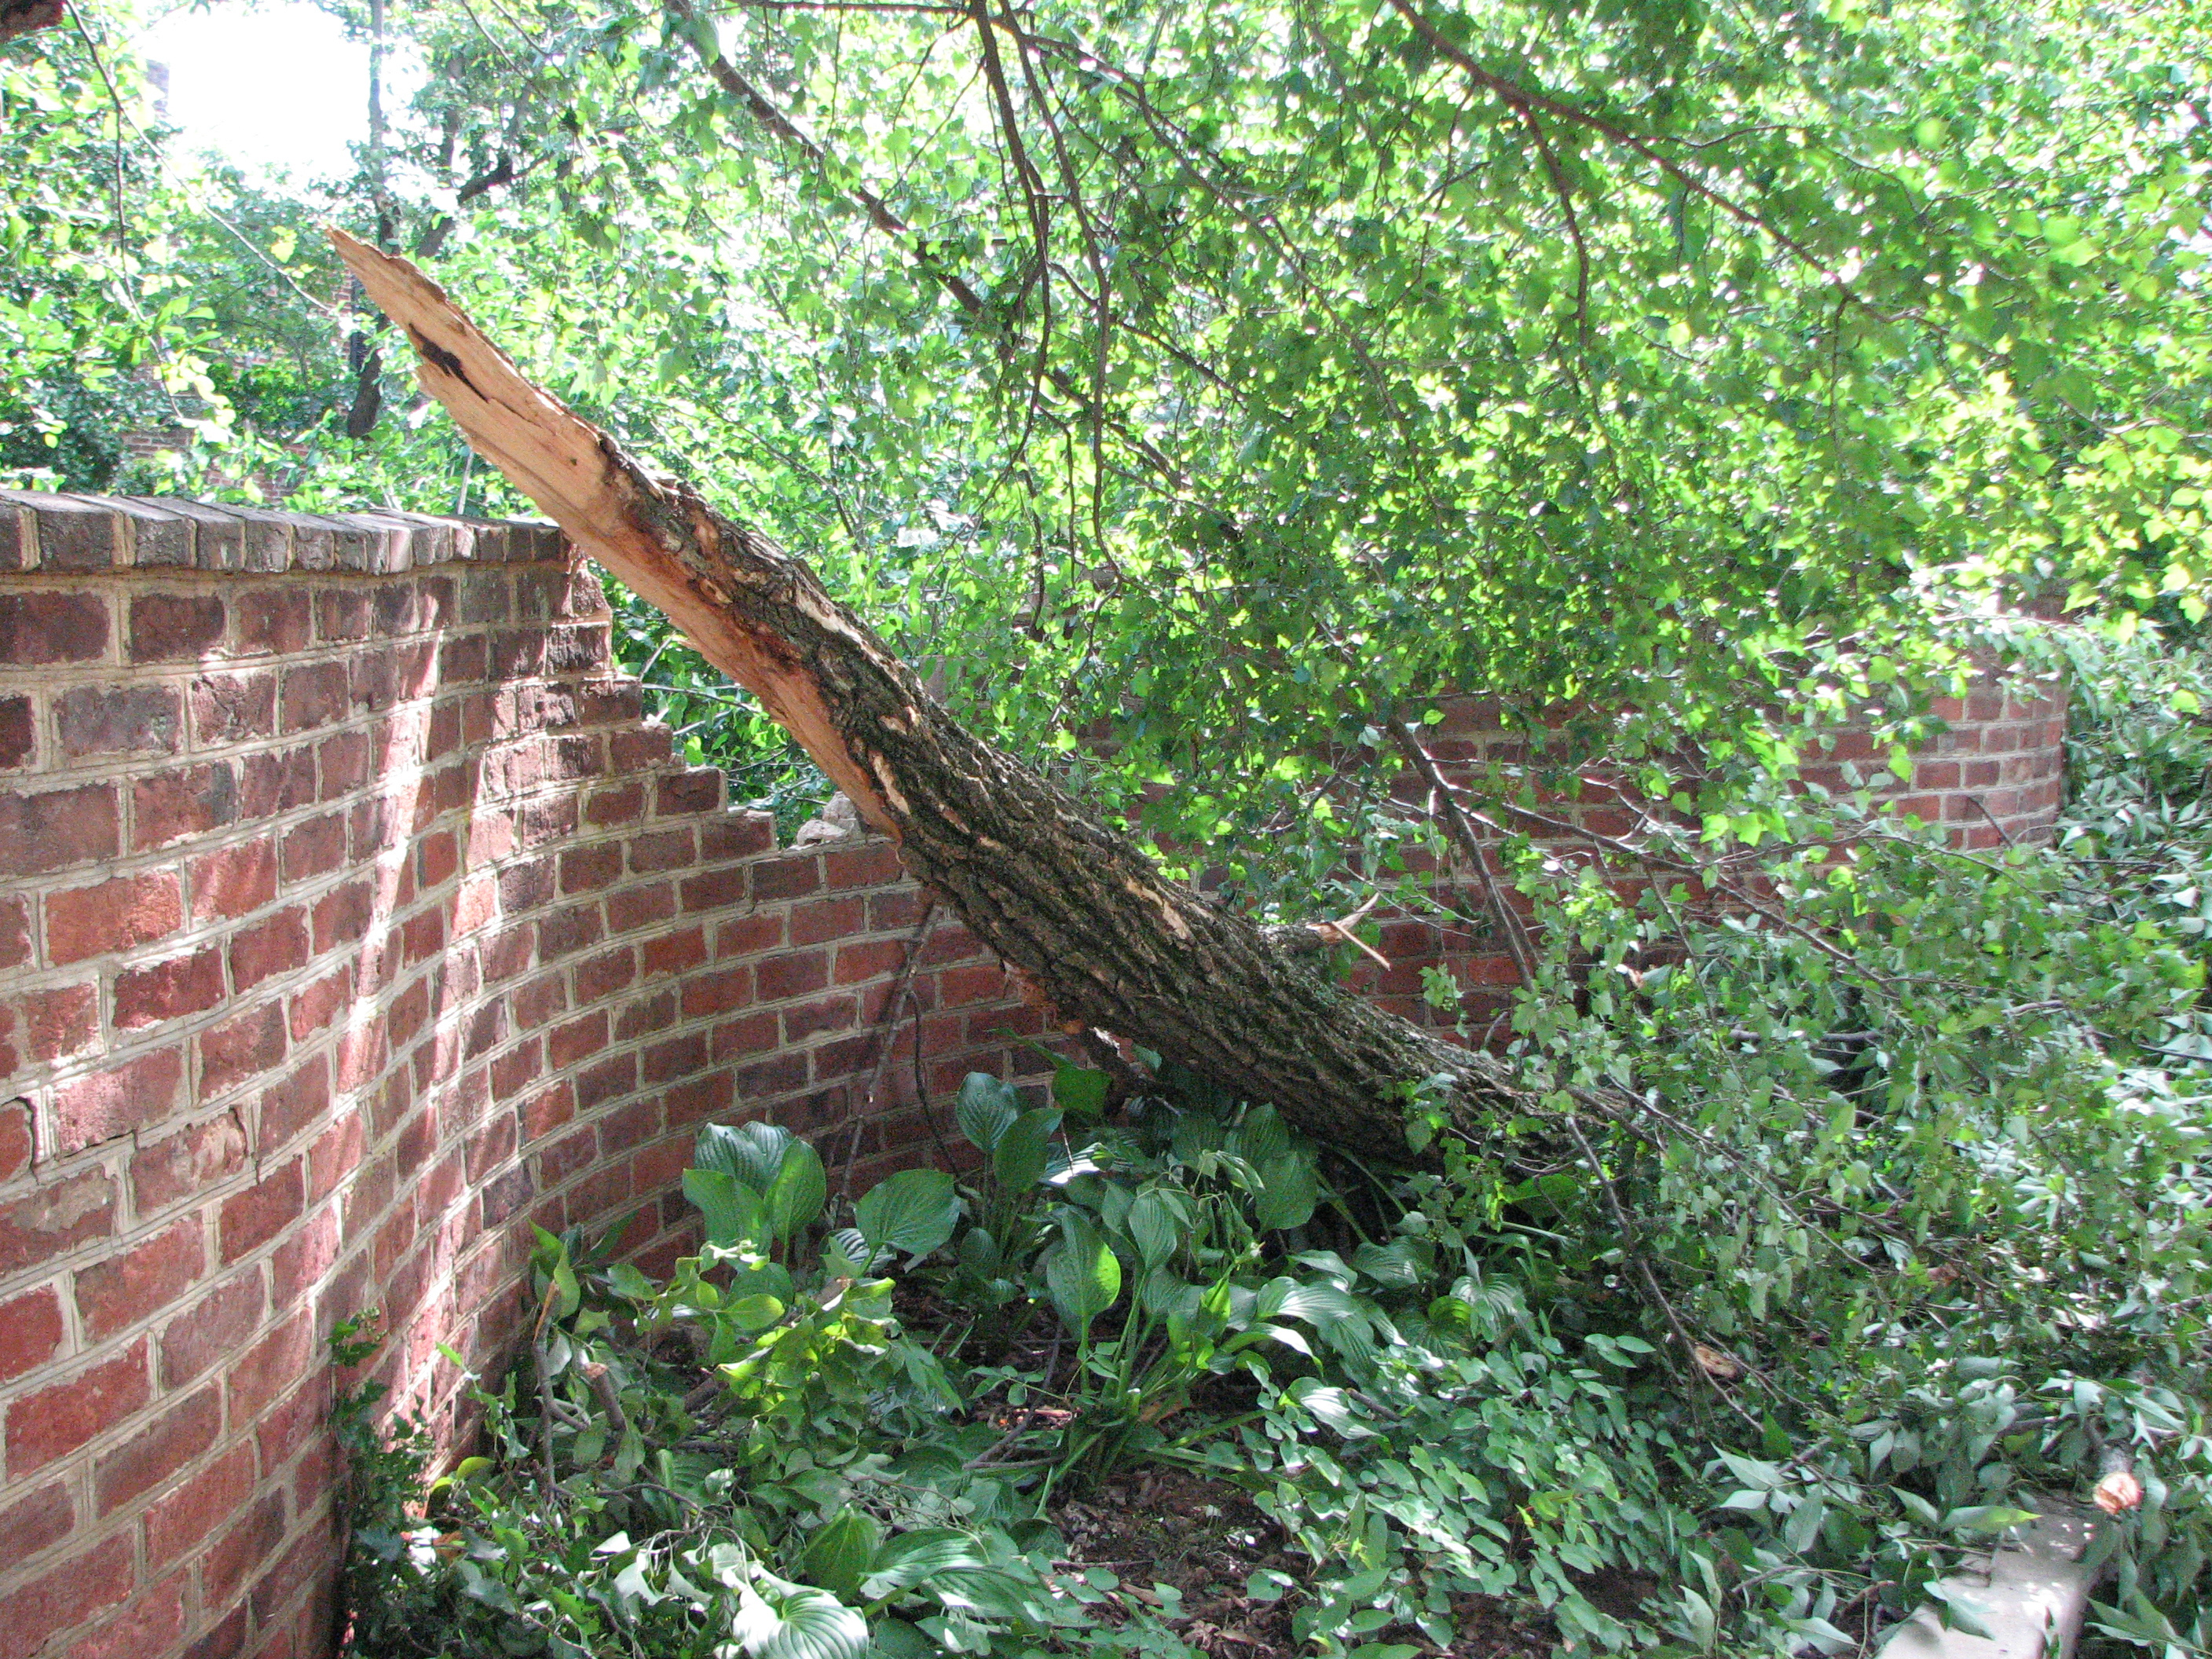 Broken tree branch next to a brick serpentine wall